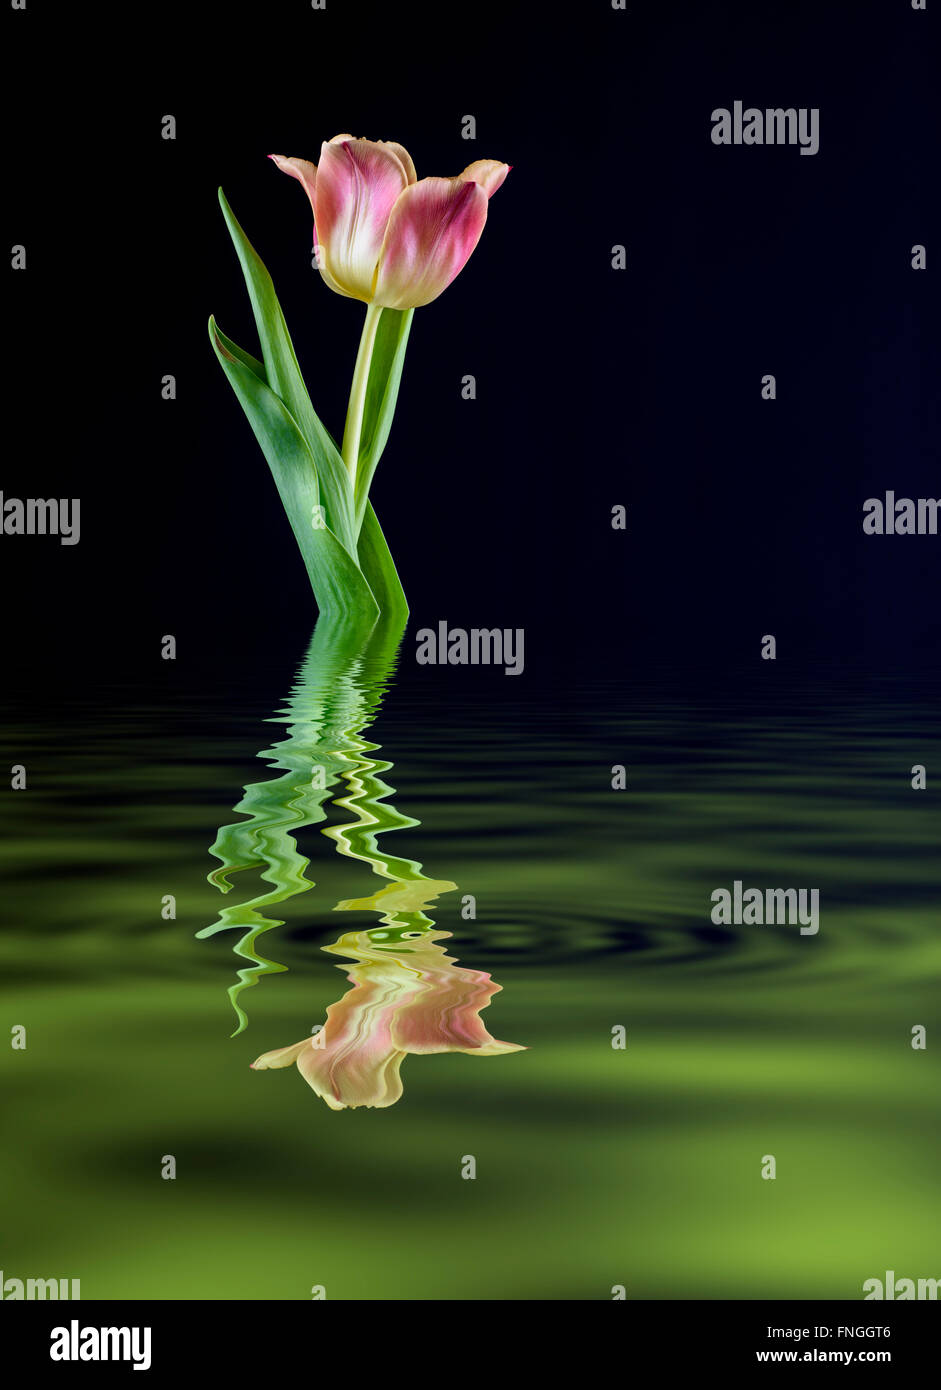 Manipolati digitalmente immagine di un rosa tulip riflettendo in una piscina di acqua Foto Stock